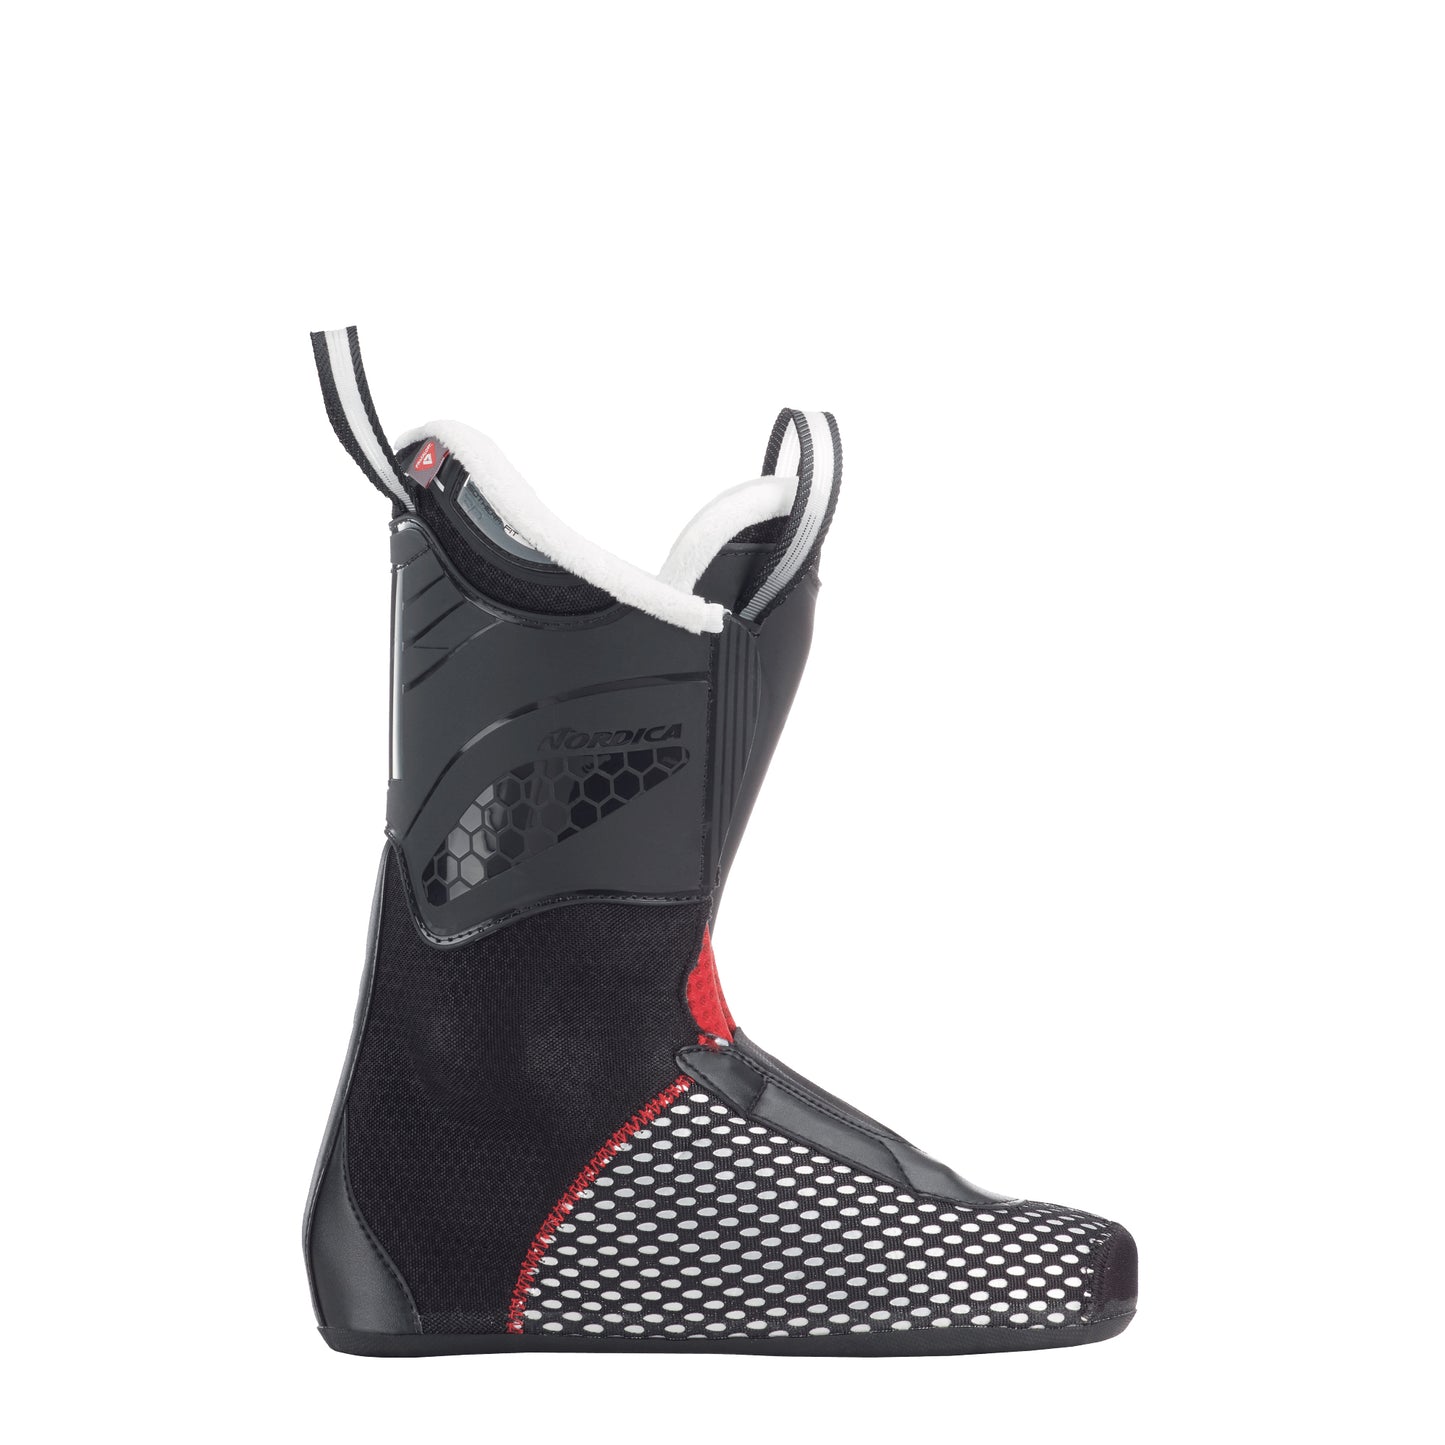 Nordica Promachine 85 W (GW) Ski Boots